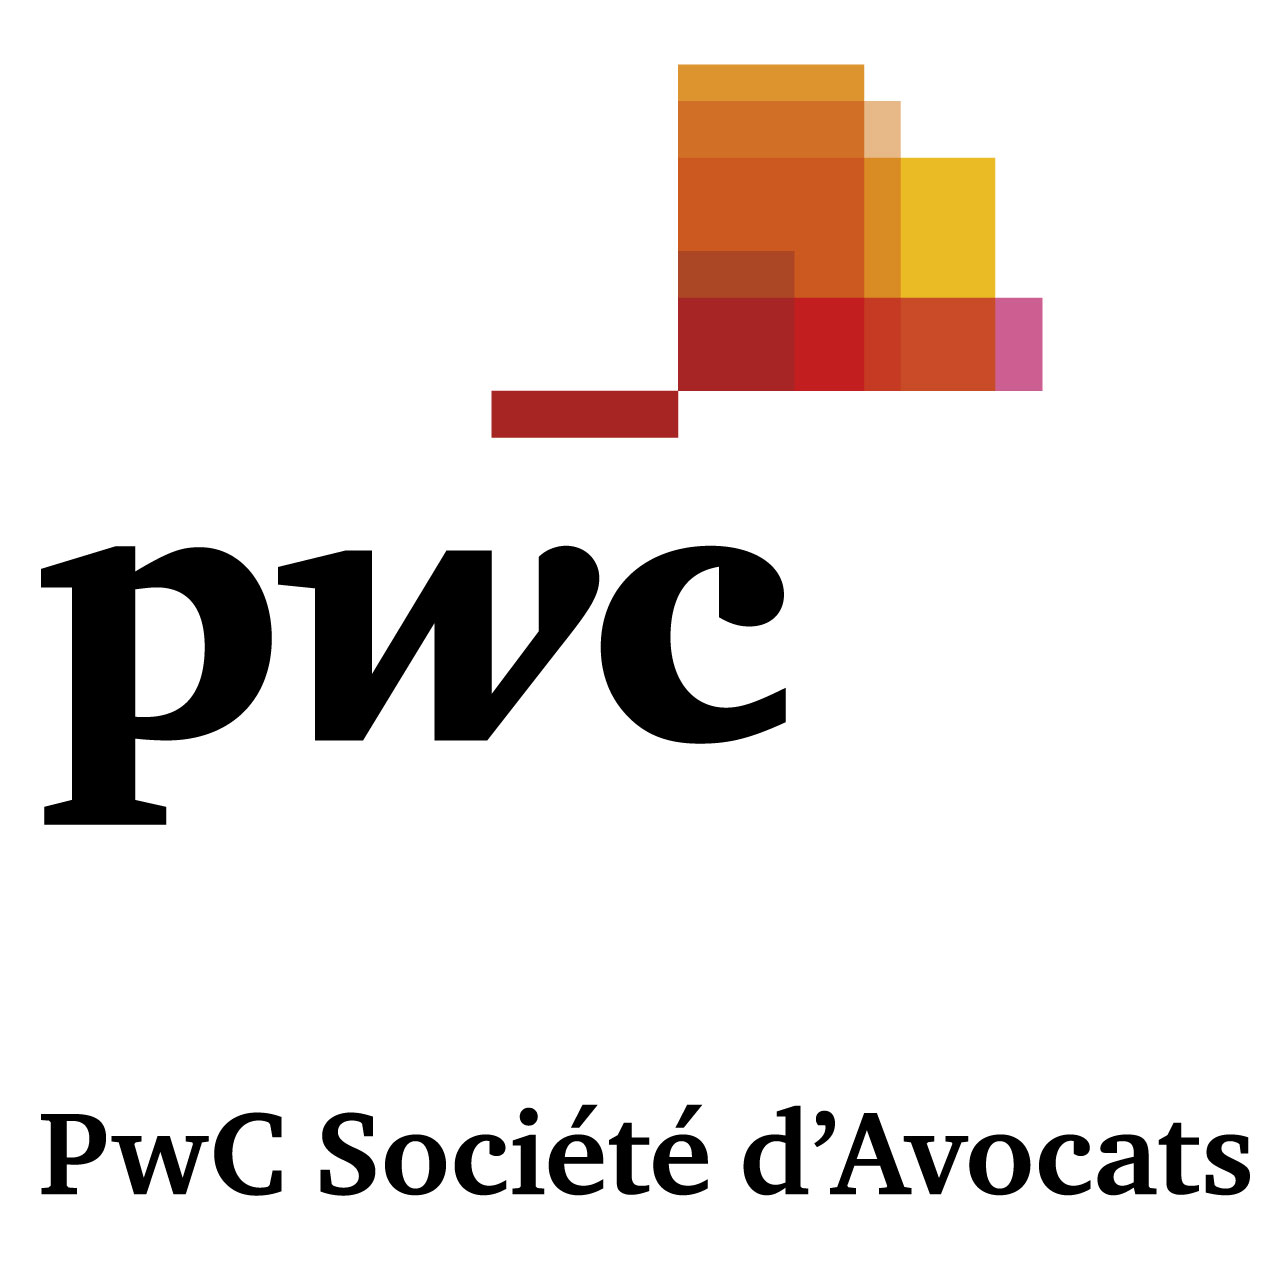 PwC Societe d’Avocats